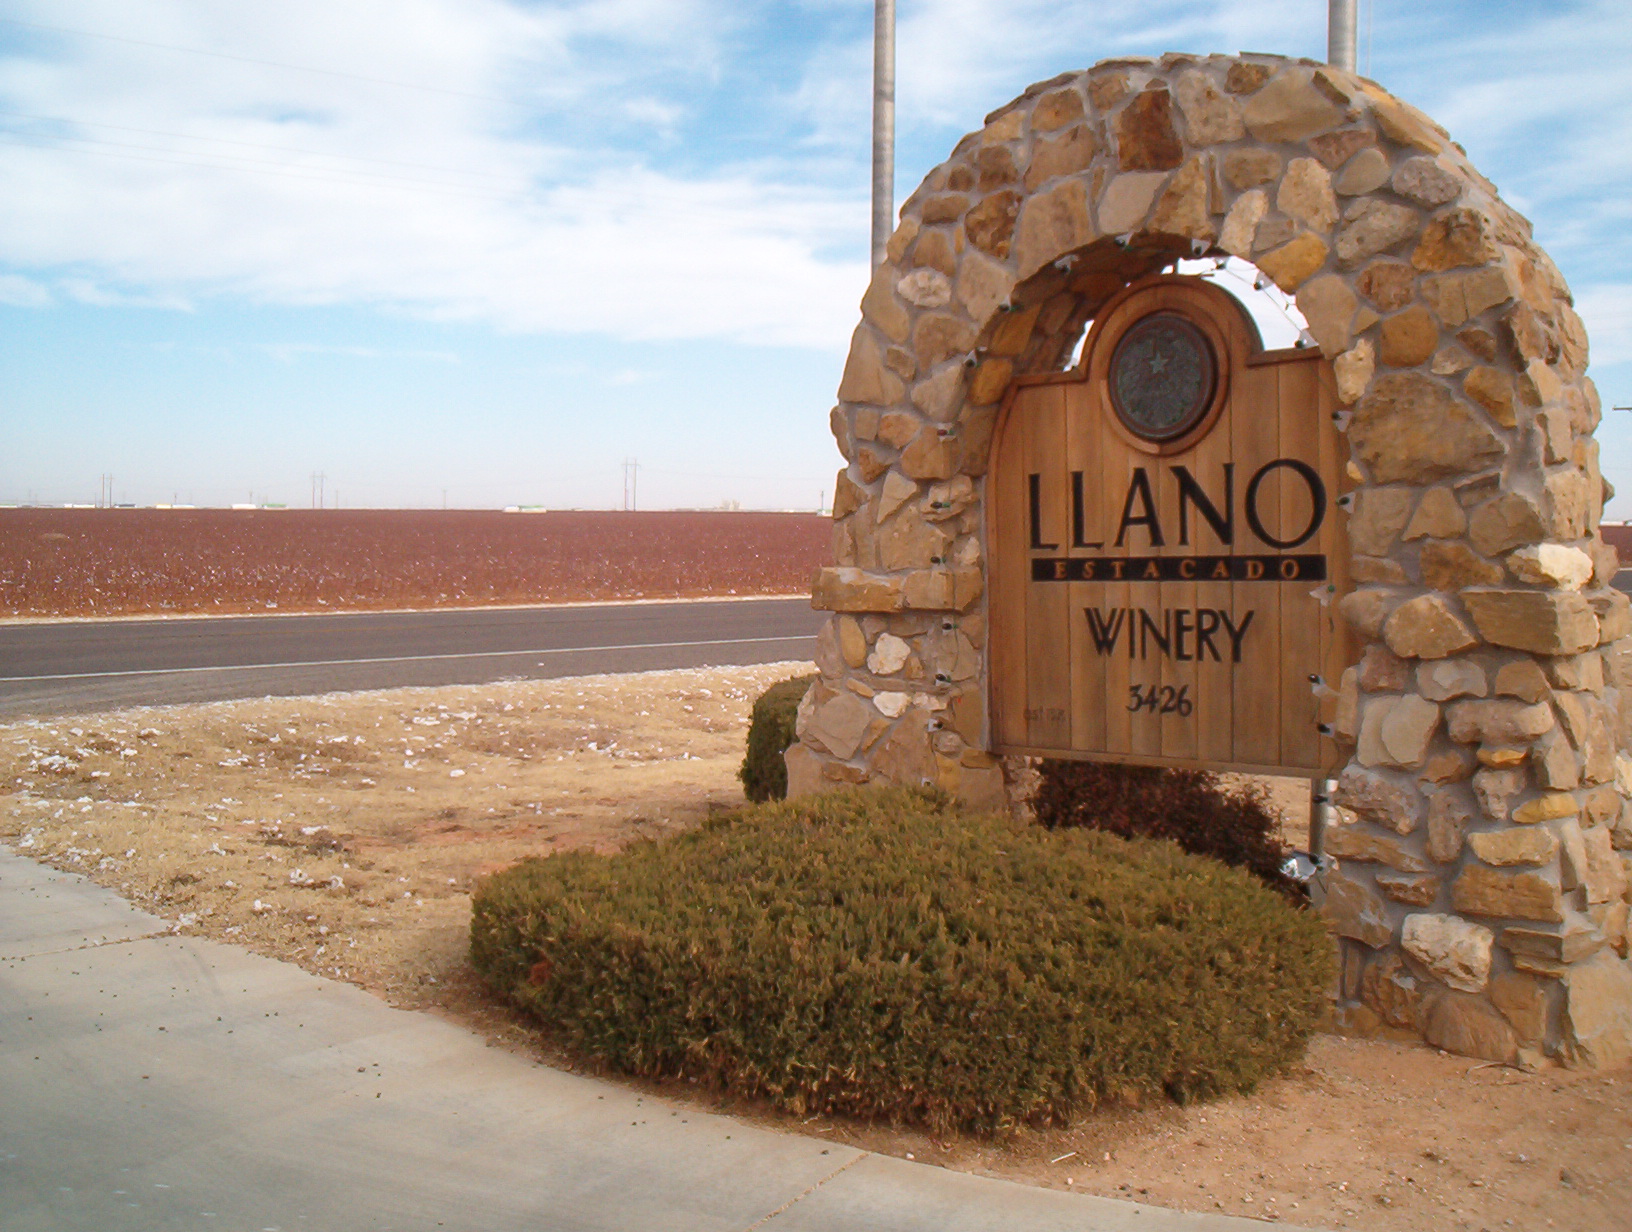 Llano Estacado Winery, Inc